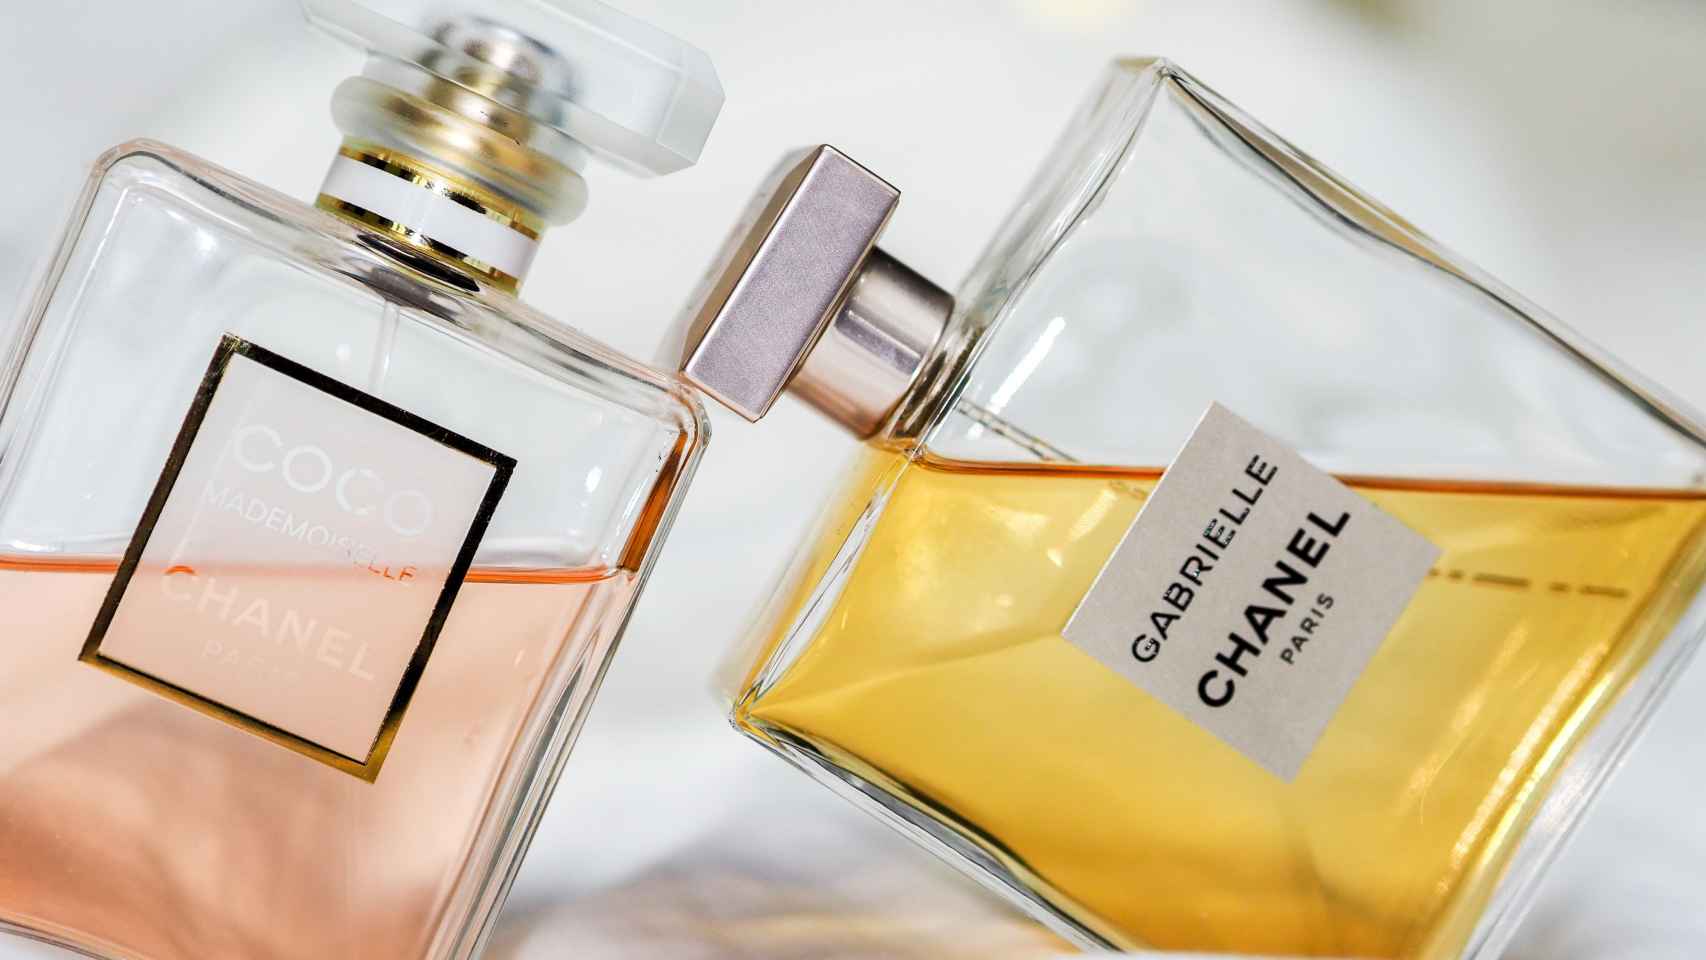 Detalle de dos frascos de Chanel.